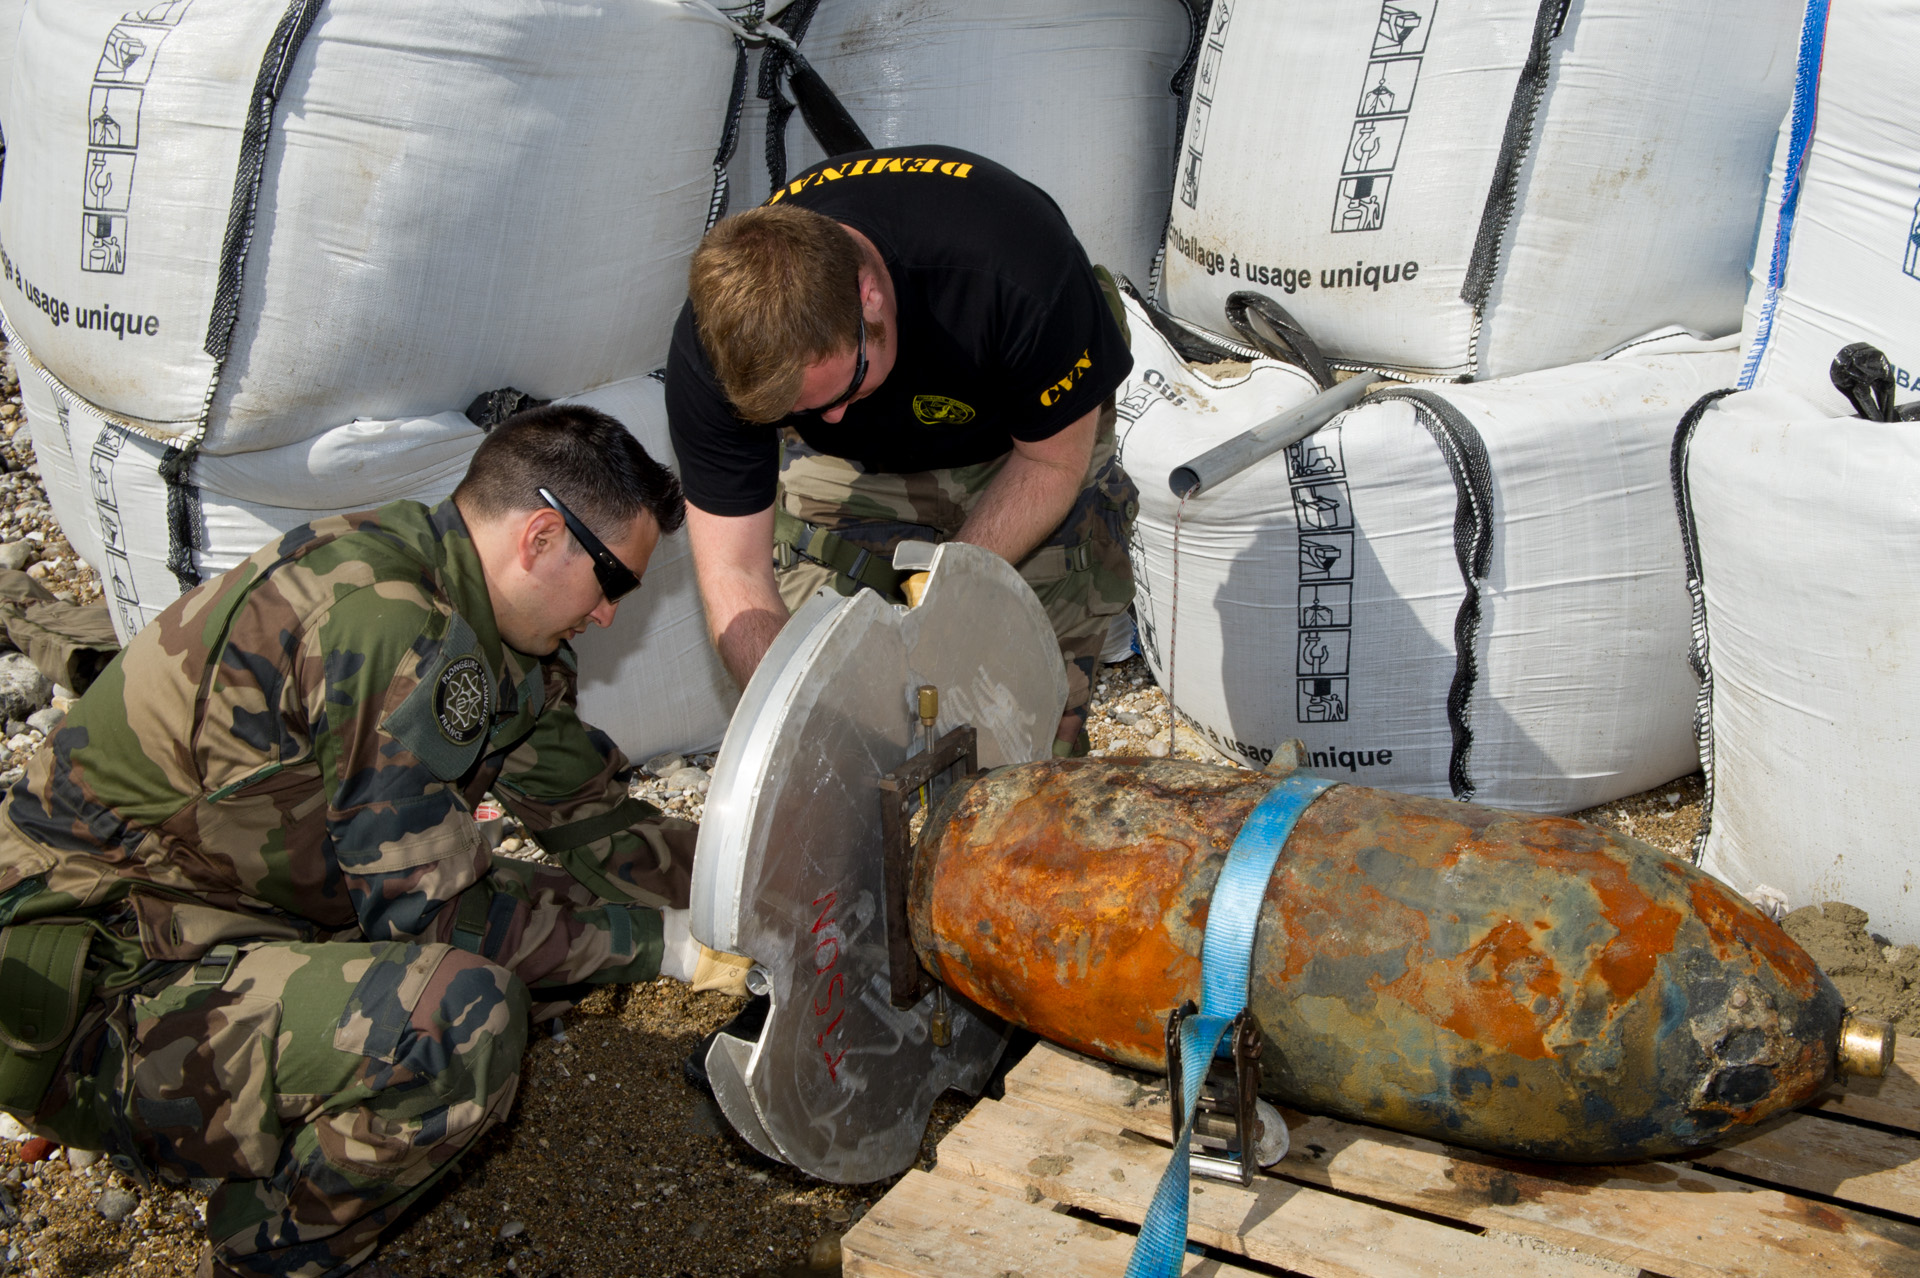 Les plongeurs-démineurs préparent la bombe avant da destruction en mer (Photo@Marine nationale)